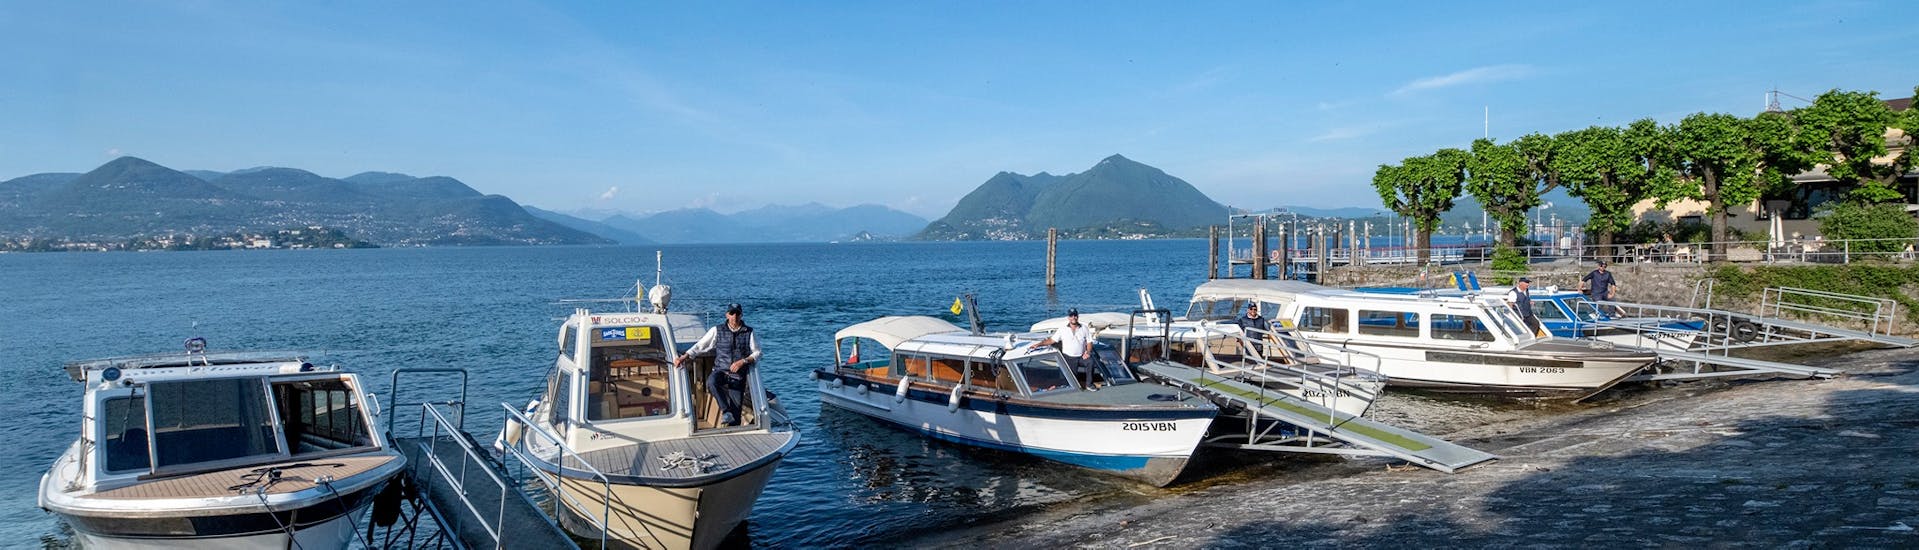 Uitzicht op de boten die gebruikt worden voor de Boottransfer van Stresa naar Isola Pescatori met Lake Tours Stresa.